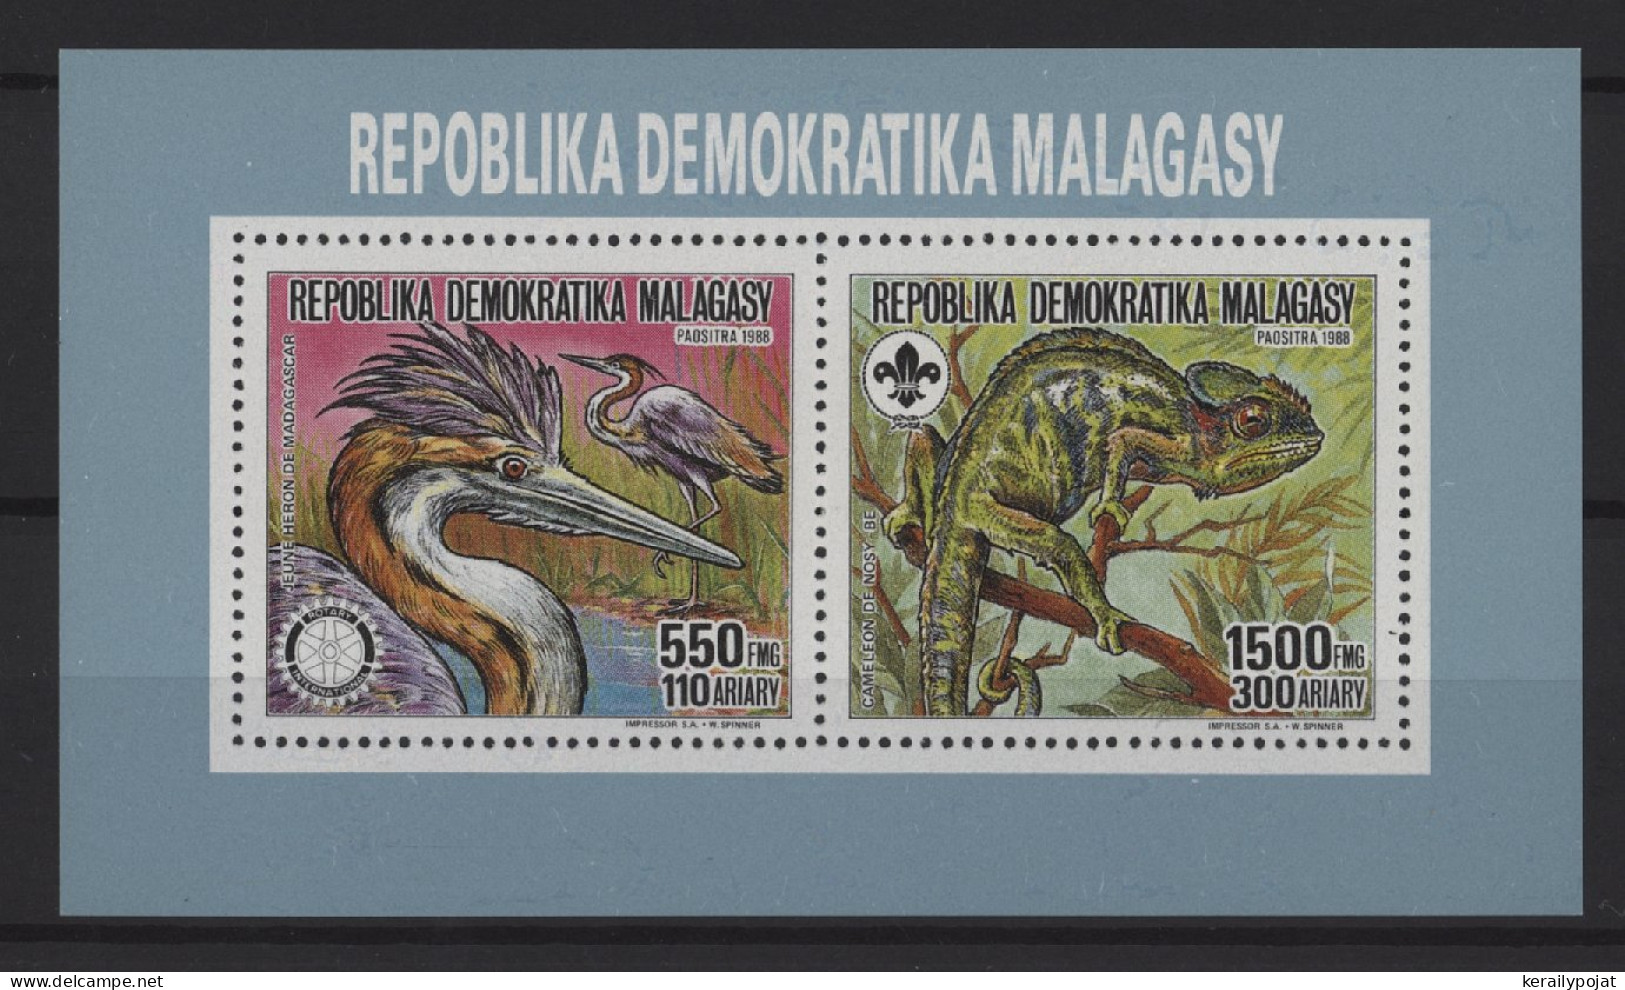 Madagascar - 1988 Rotary International Kleinbogen MNH__(TH-27445) - Madagaskar (1960-...)